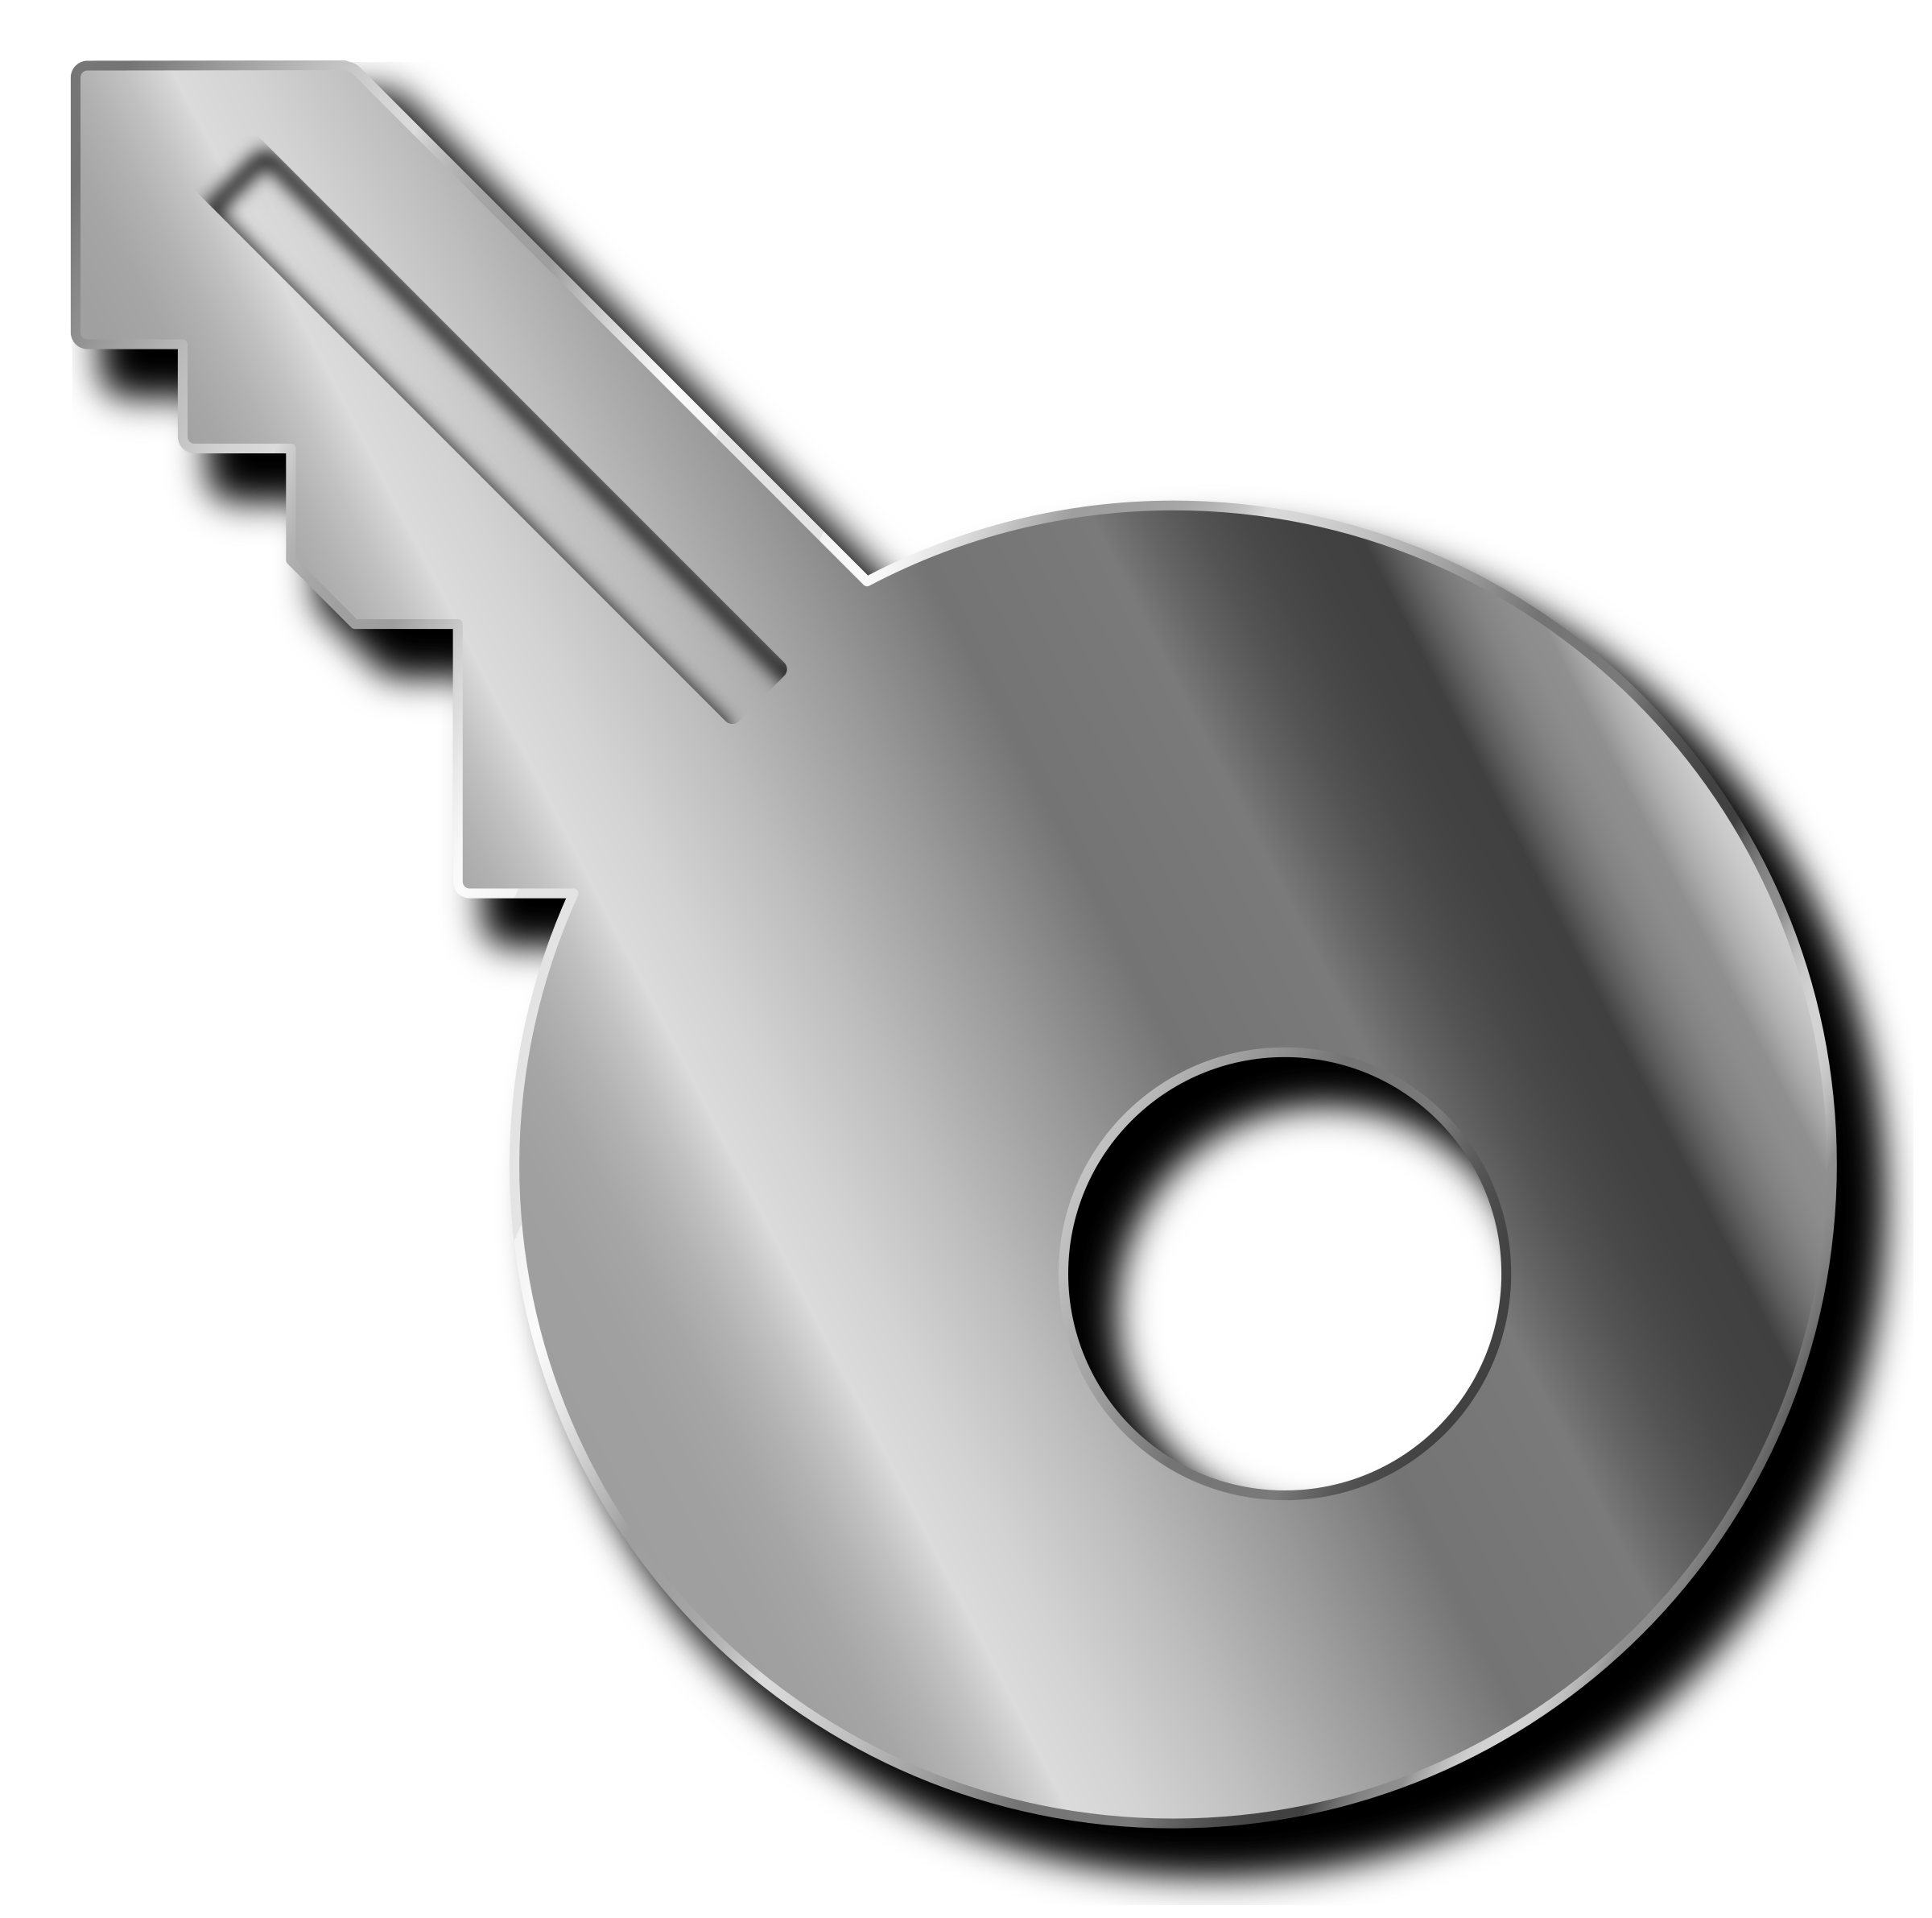 Keys key shape